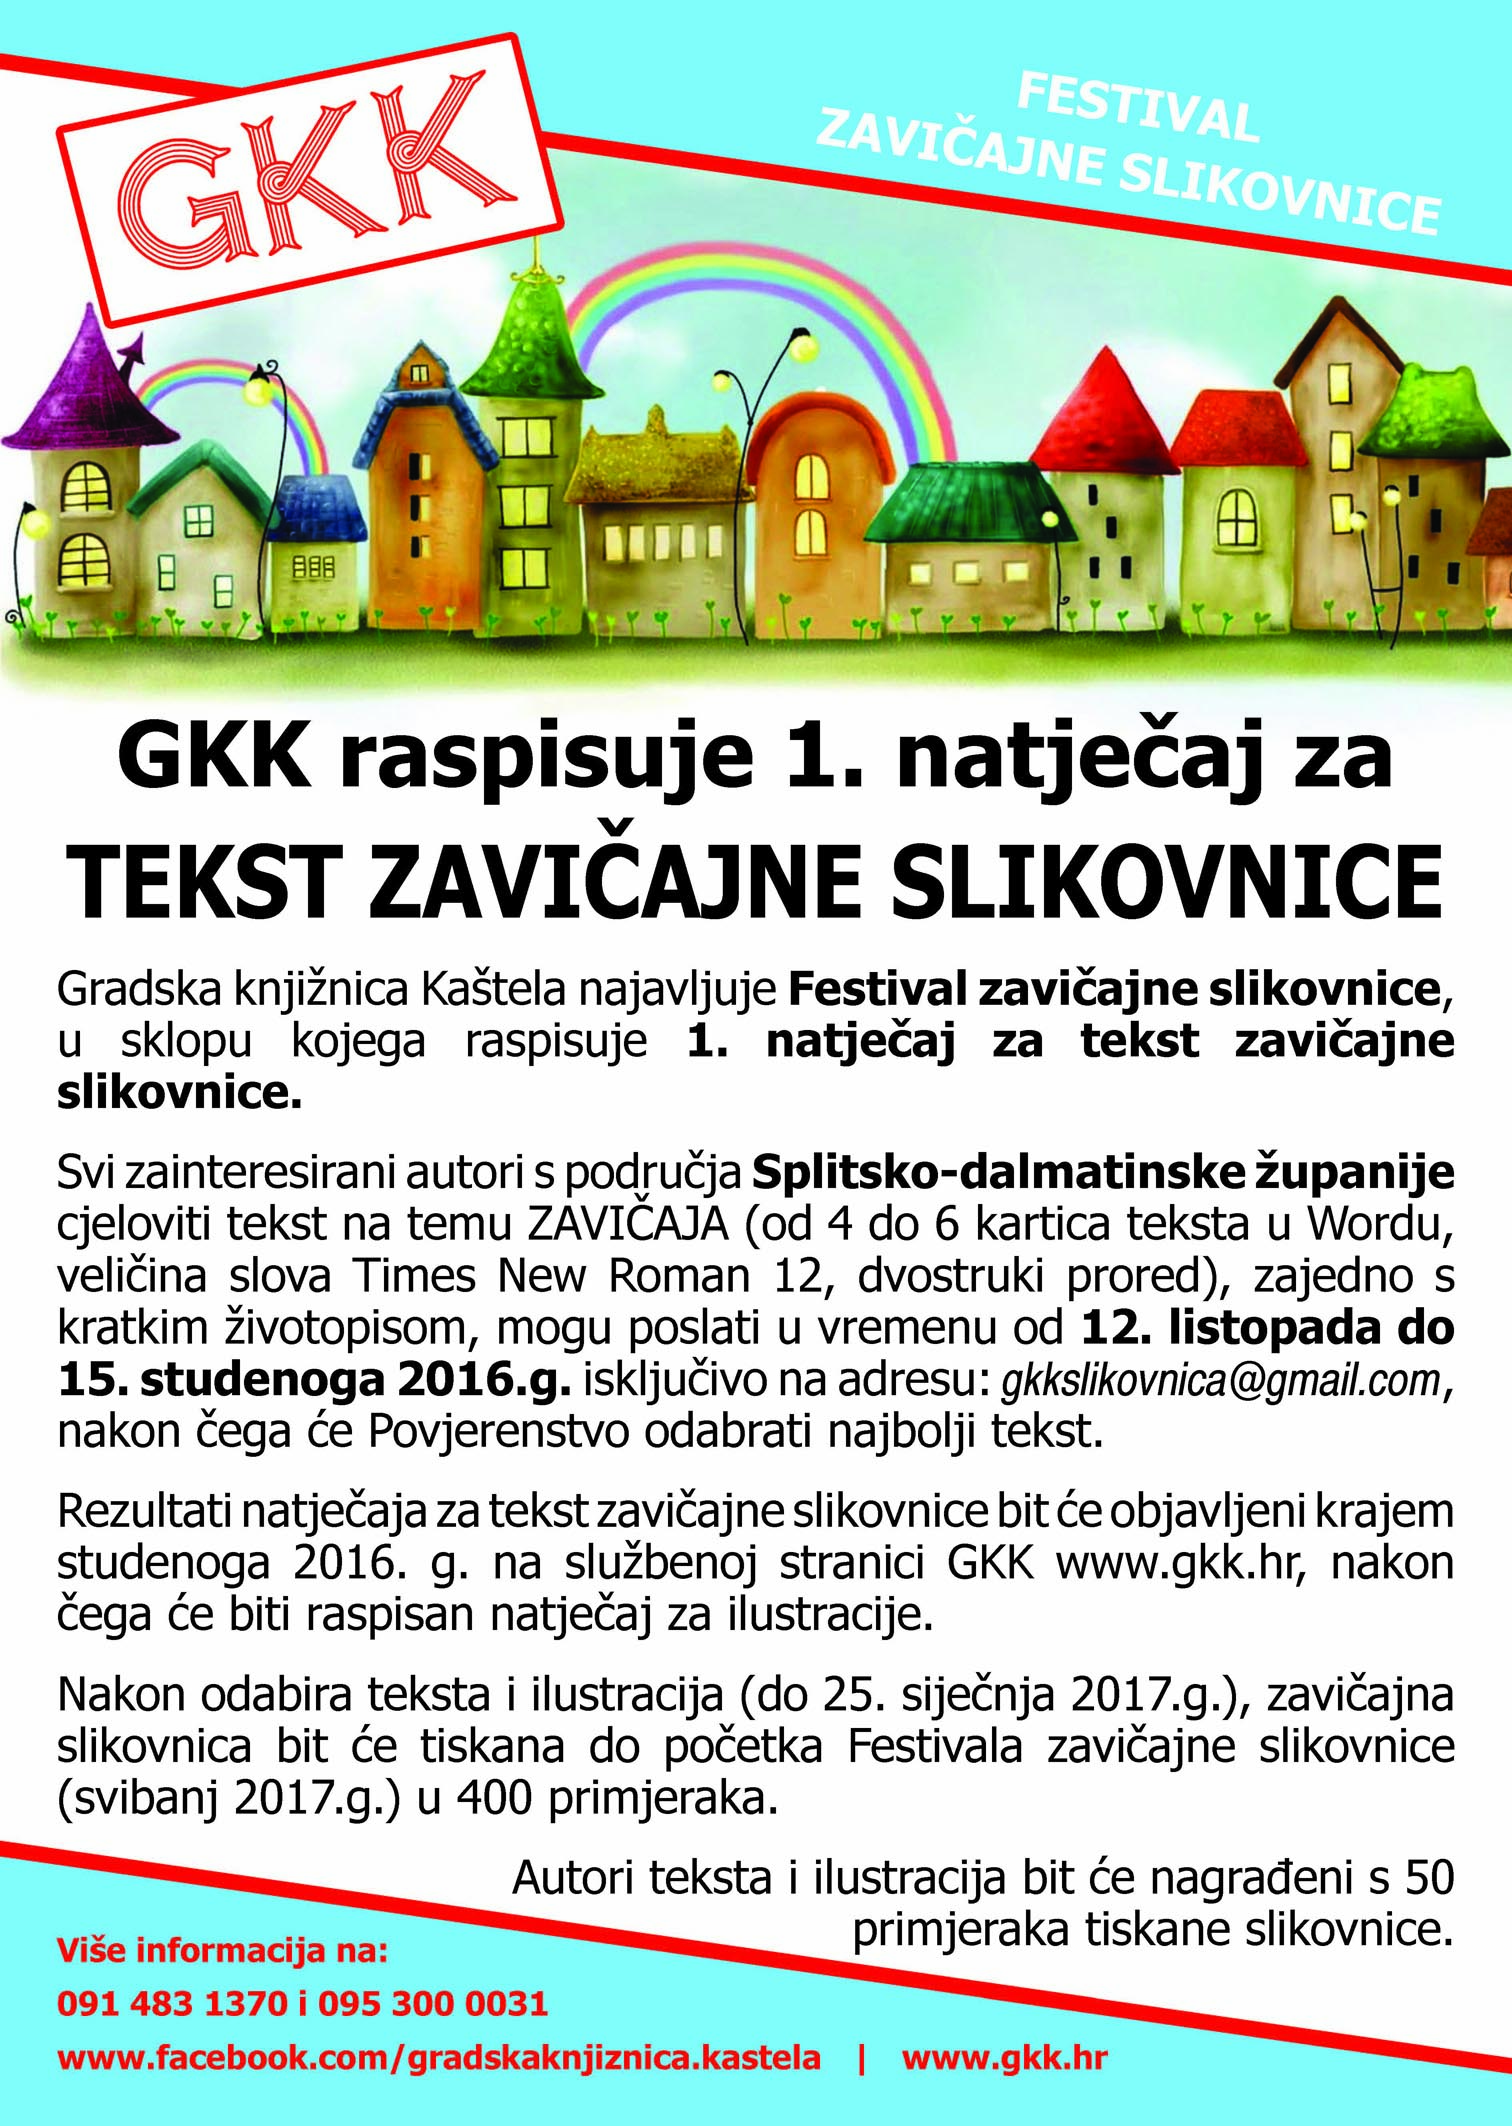 Festival zavicajne slikovnice GKK plakat